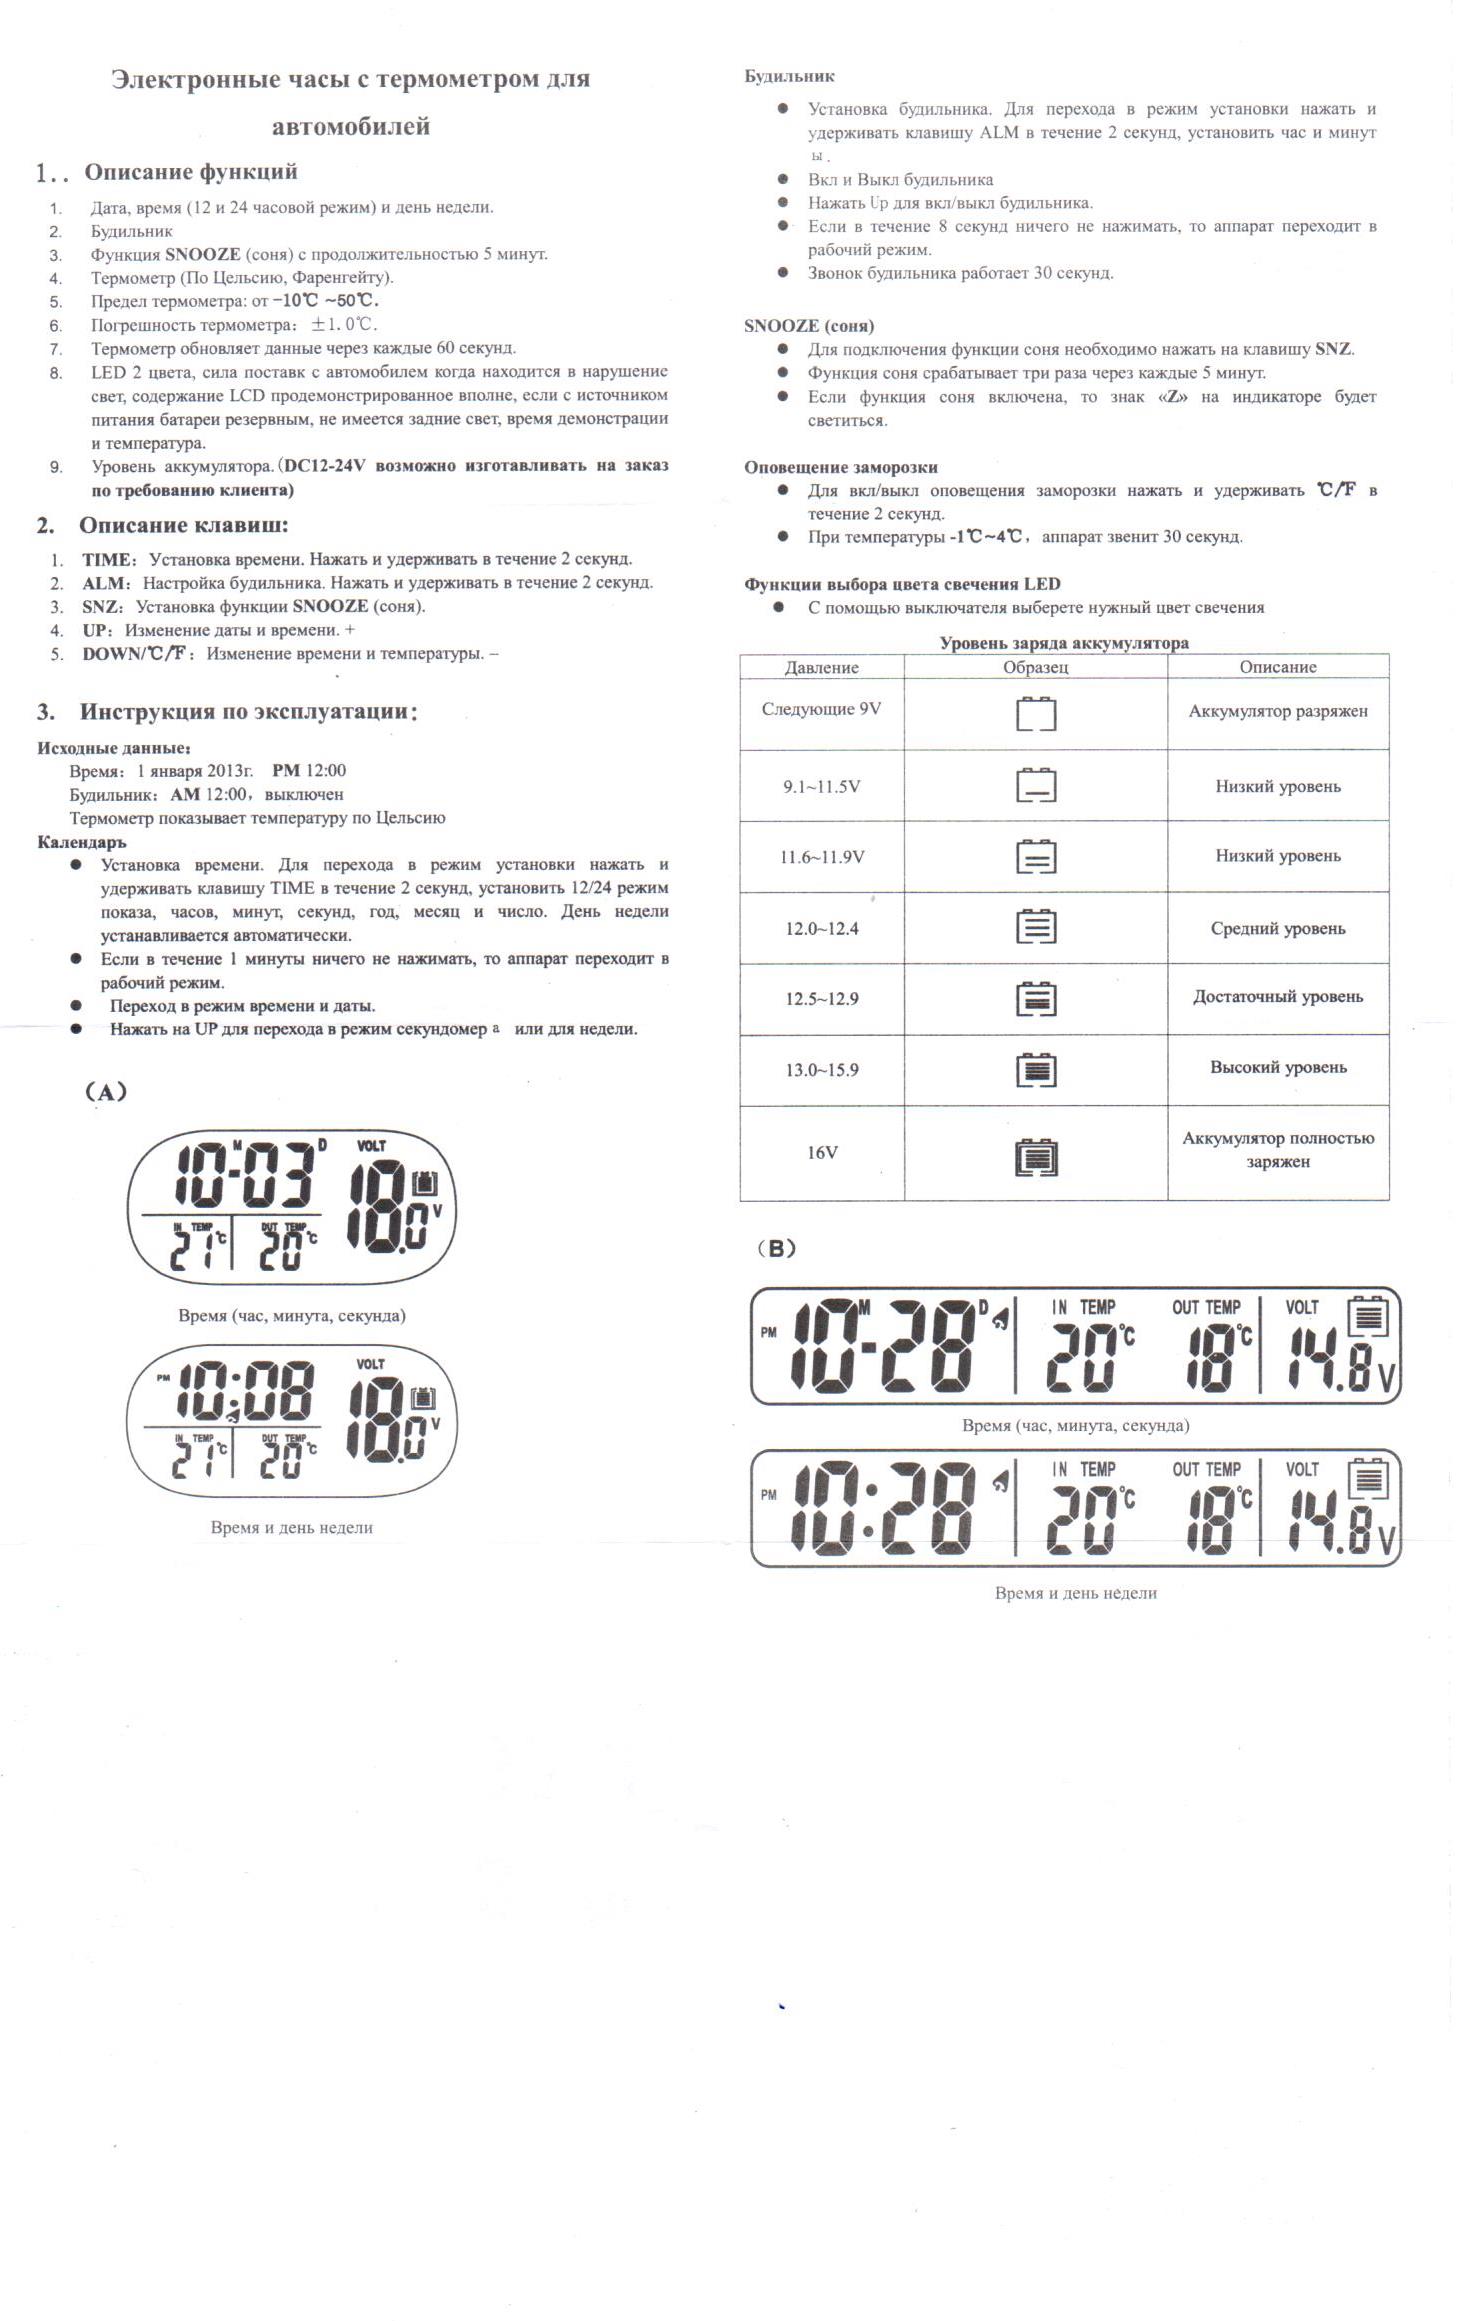 Инструкция настройки электронных часов vst. Электронные часы VST-7050. Электронные часы VST 729 инструкция. Инструкция по эксплуатации электронных часов VST-763w. Инструкция электронных часов VST 719.